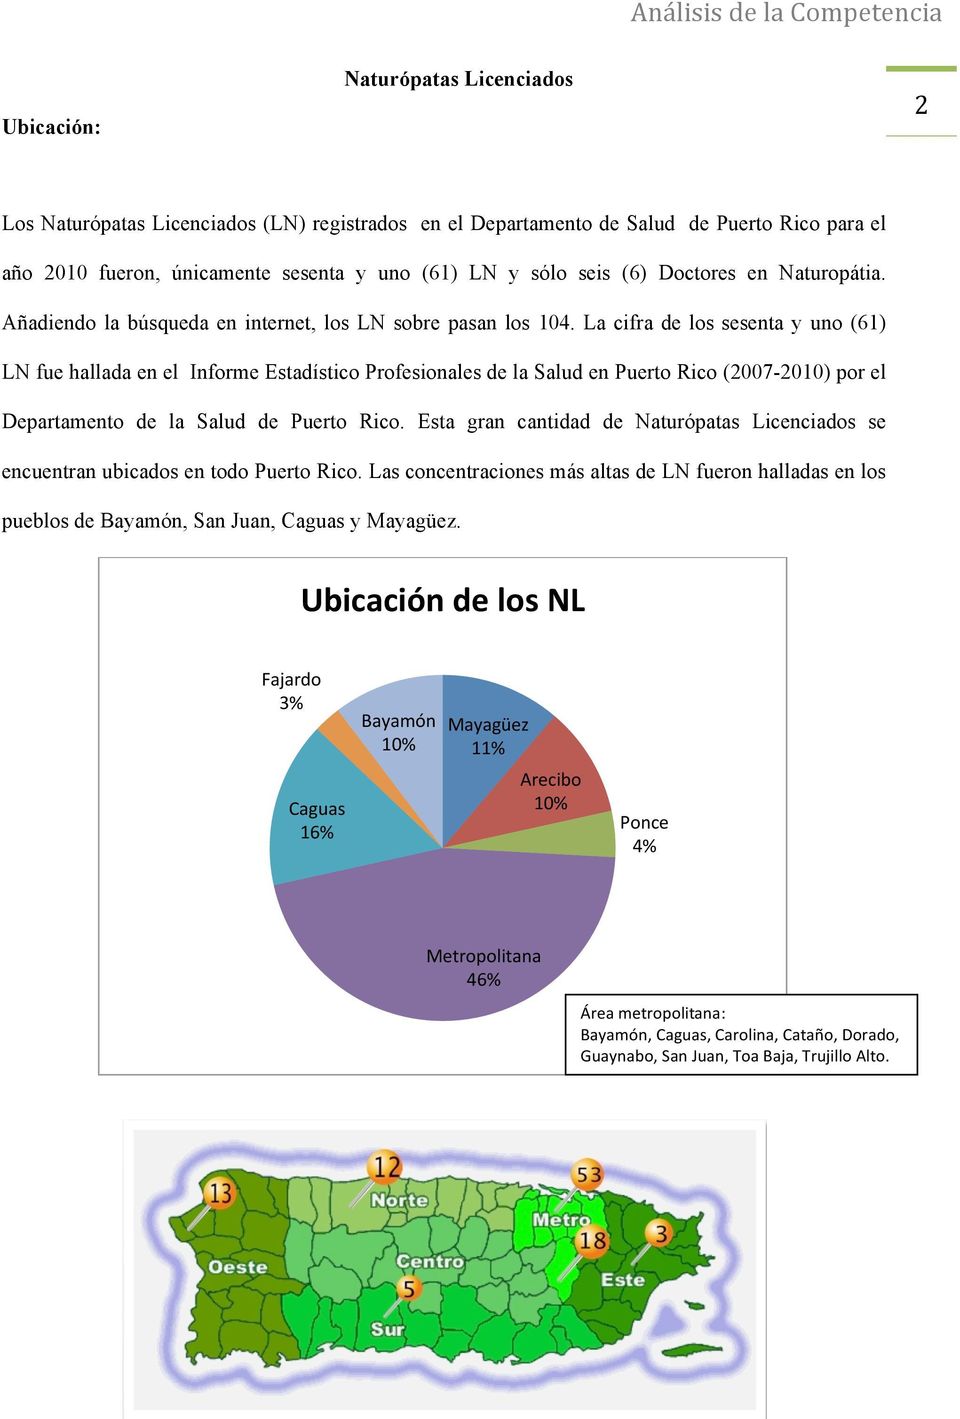 La cifra de los sesenta y uno (61) LN fue hallada en el Informe Estadístico Profesionales de la Salud en Puerto Rico (2007-2010) por el Departamento de la Salud de Puerto Rico.